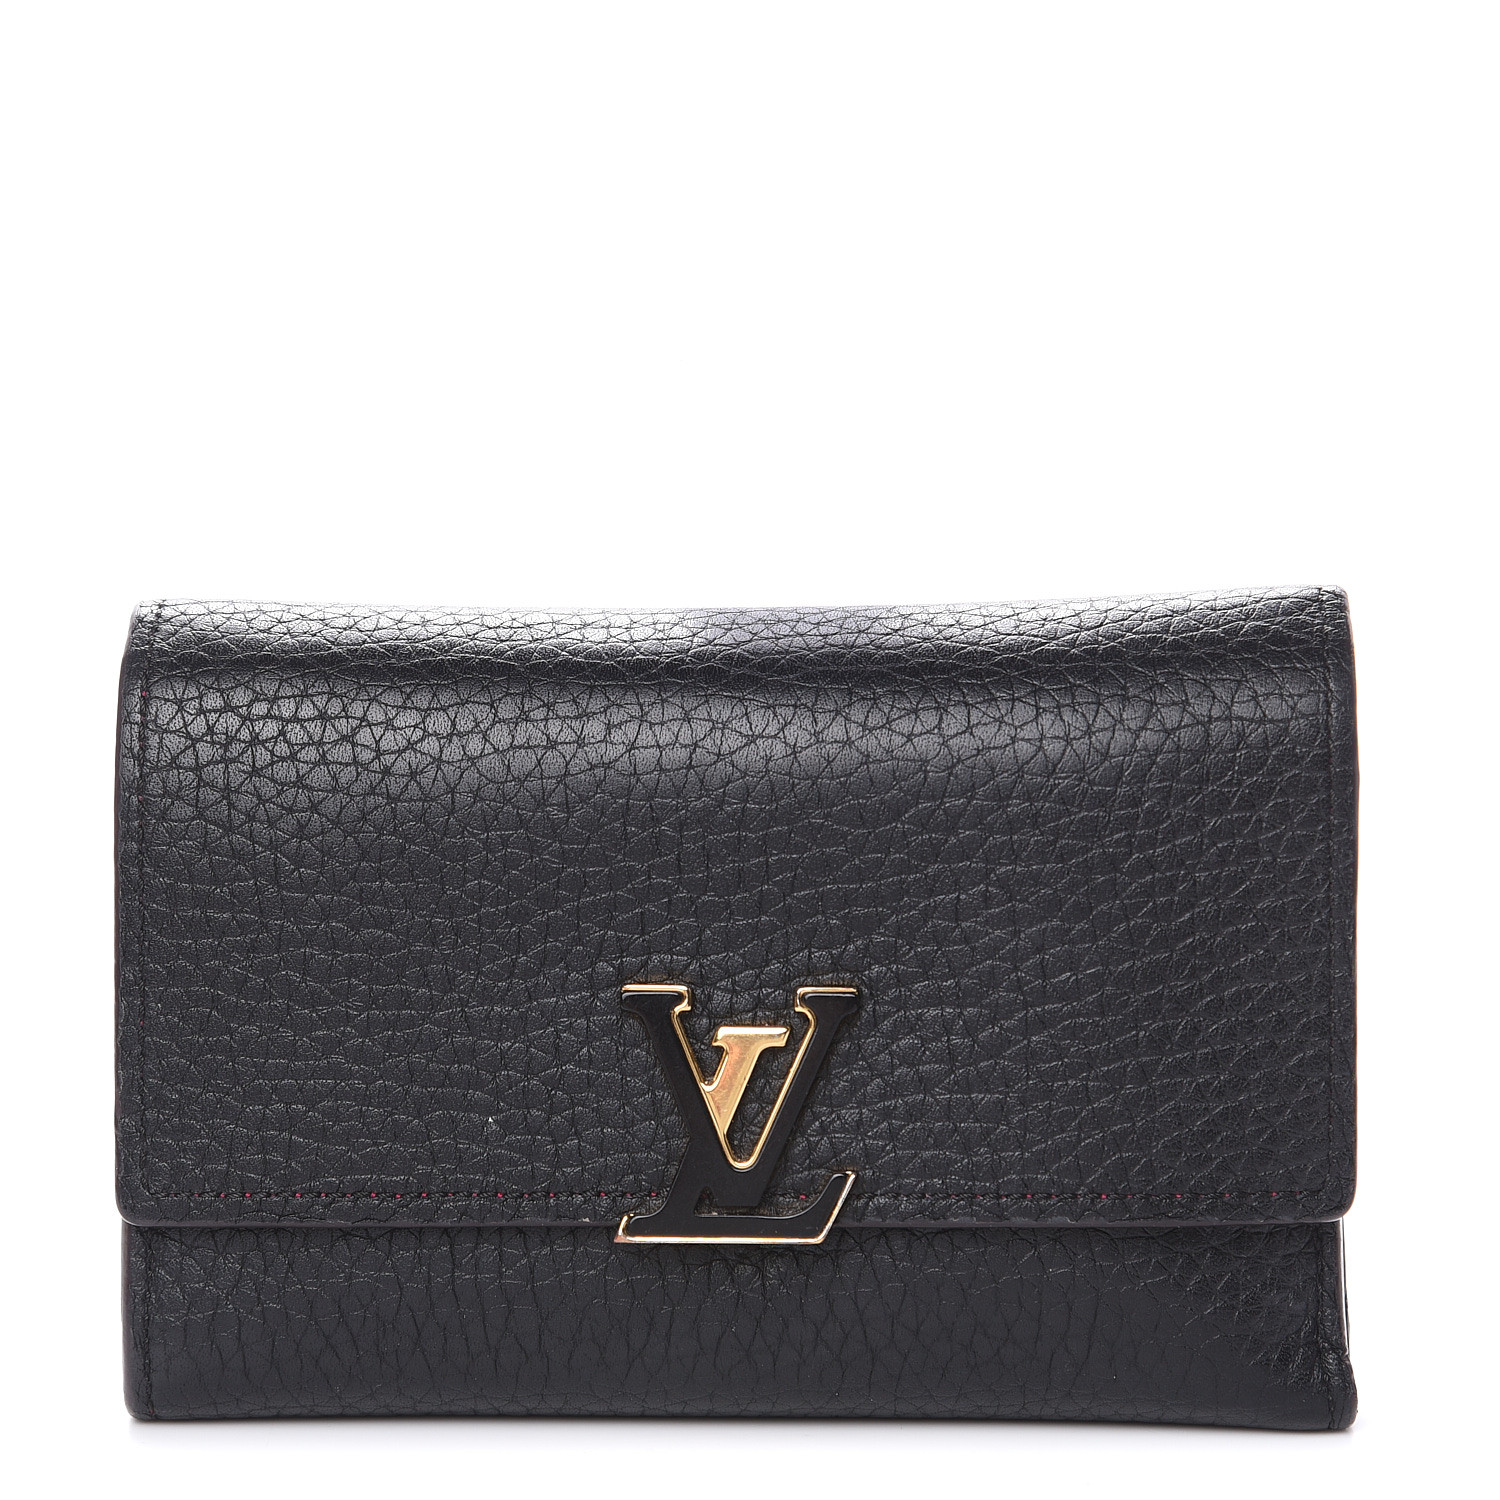 LOUIS VUITTON Taurillon Capucines Compact Wallet Black 481277